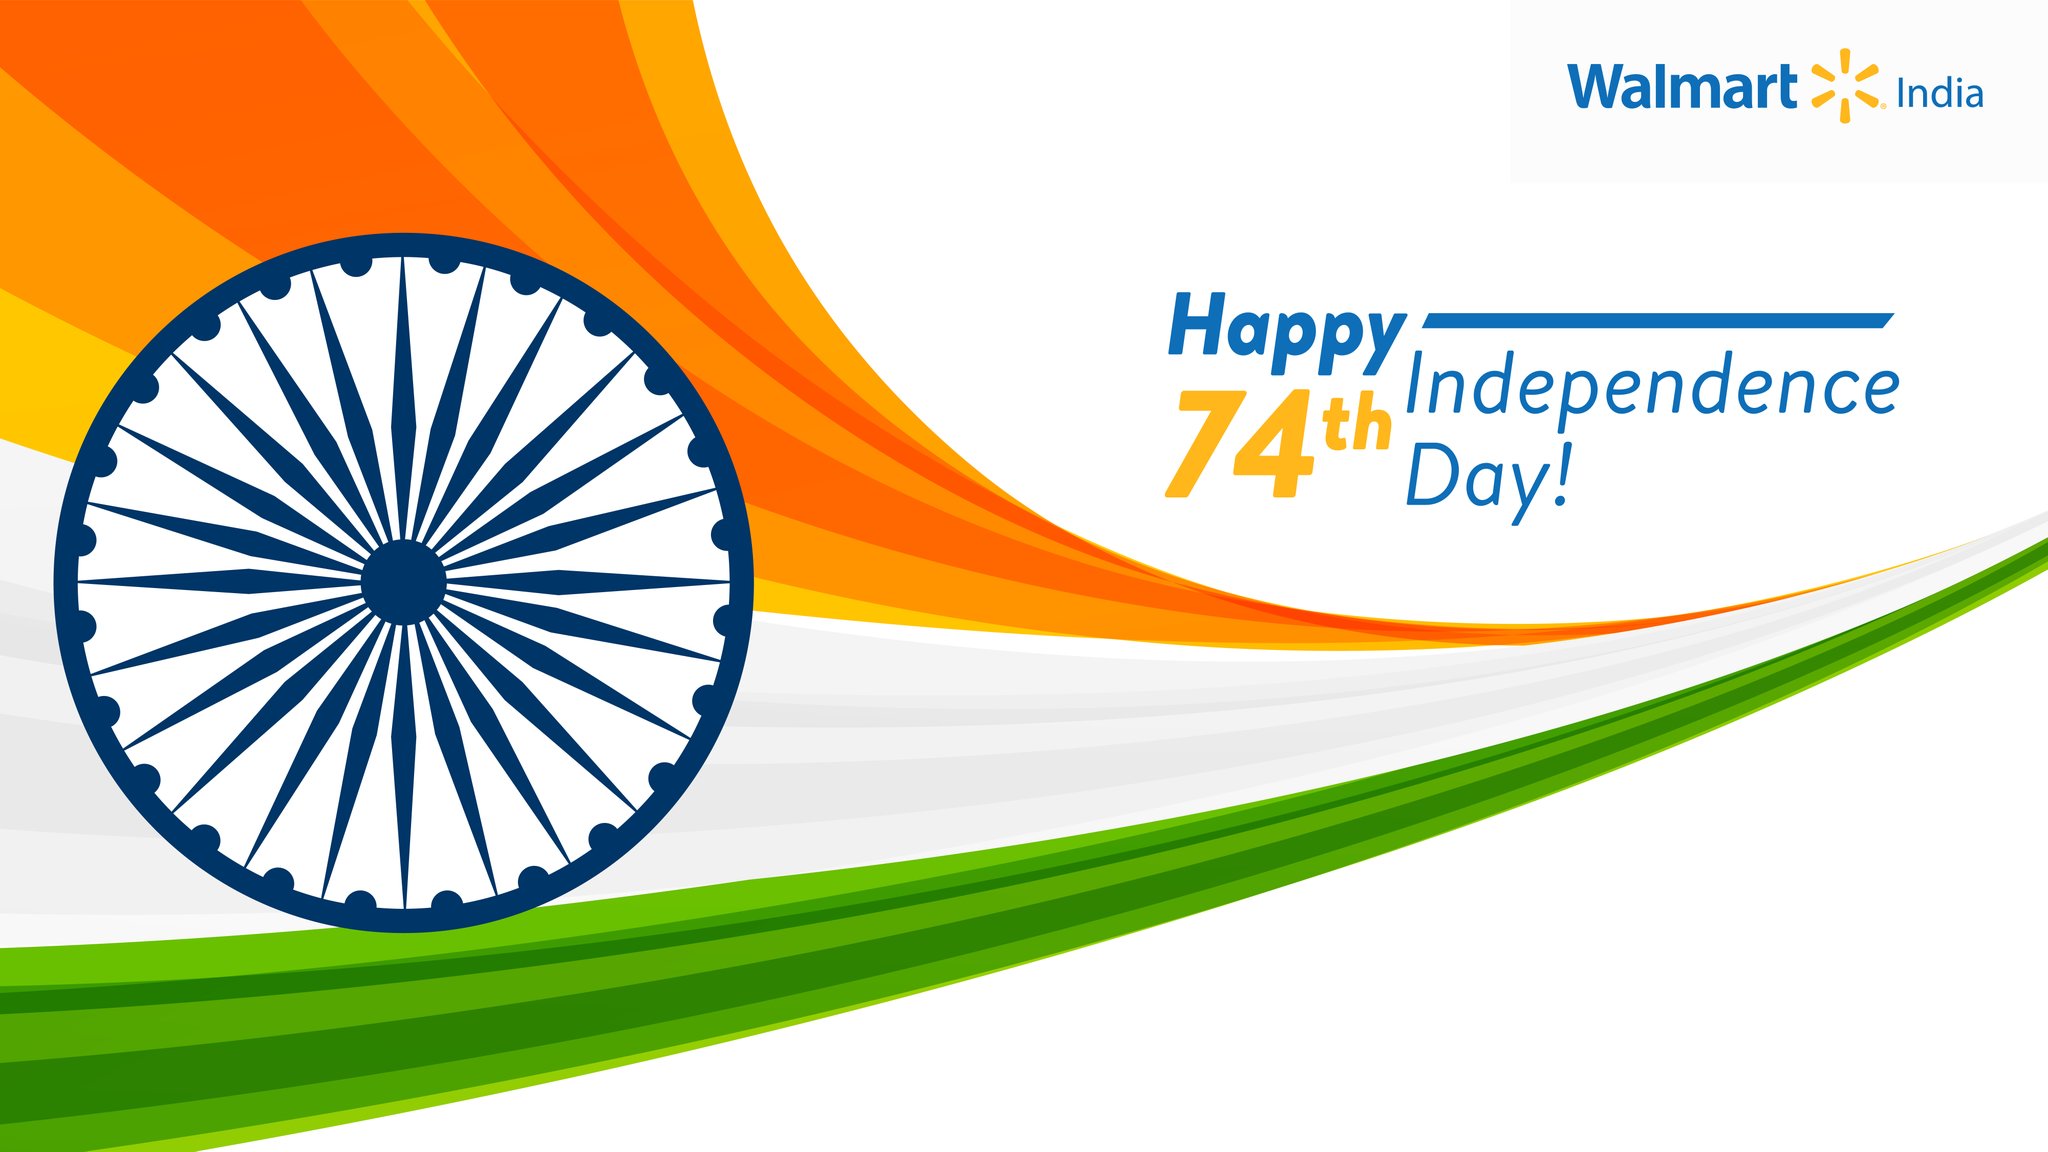 Walmart Ấn Độ chúc mừng người dân mừng kỷ niệm lần thứ 74 ngày độc lập: Cùng Walmart Ấn Độ chúc mừng ngày độc lập của đất nước. Hãy cùng xem những hình ảnh lấy cảm hứng từ niềm tự hào và sự tôn vinh cho truyền thống và lịch sử của đất nước Ấn Độ. 